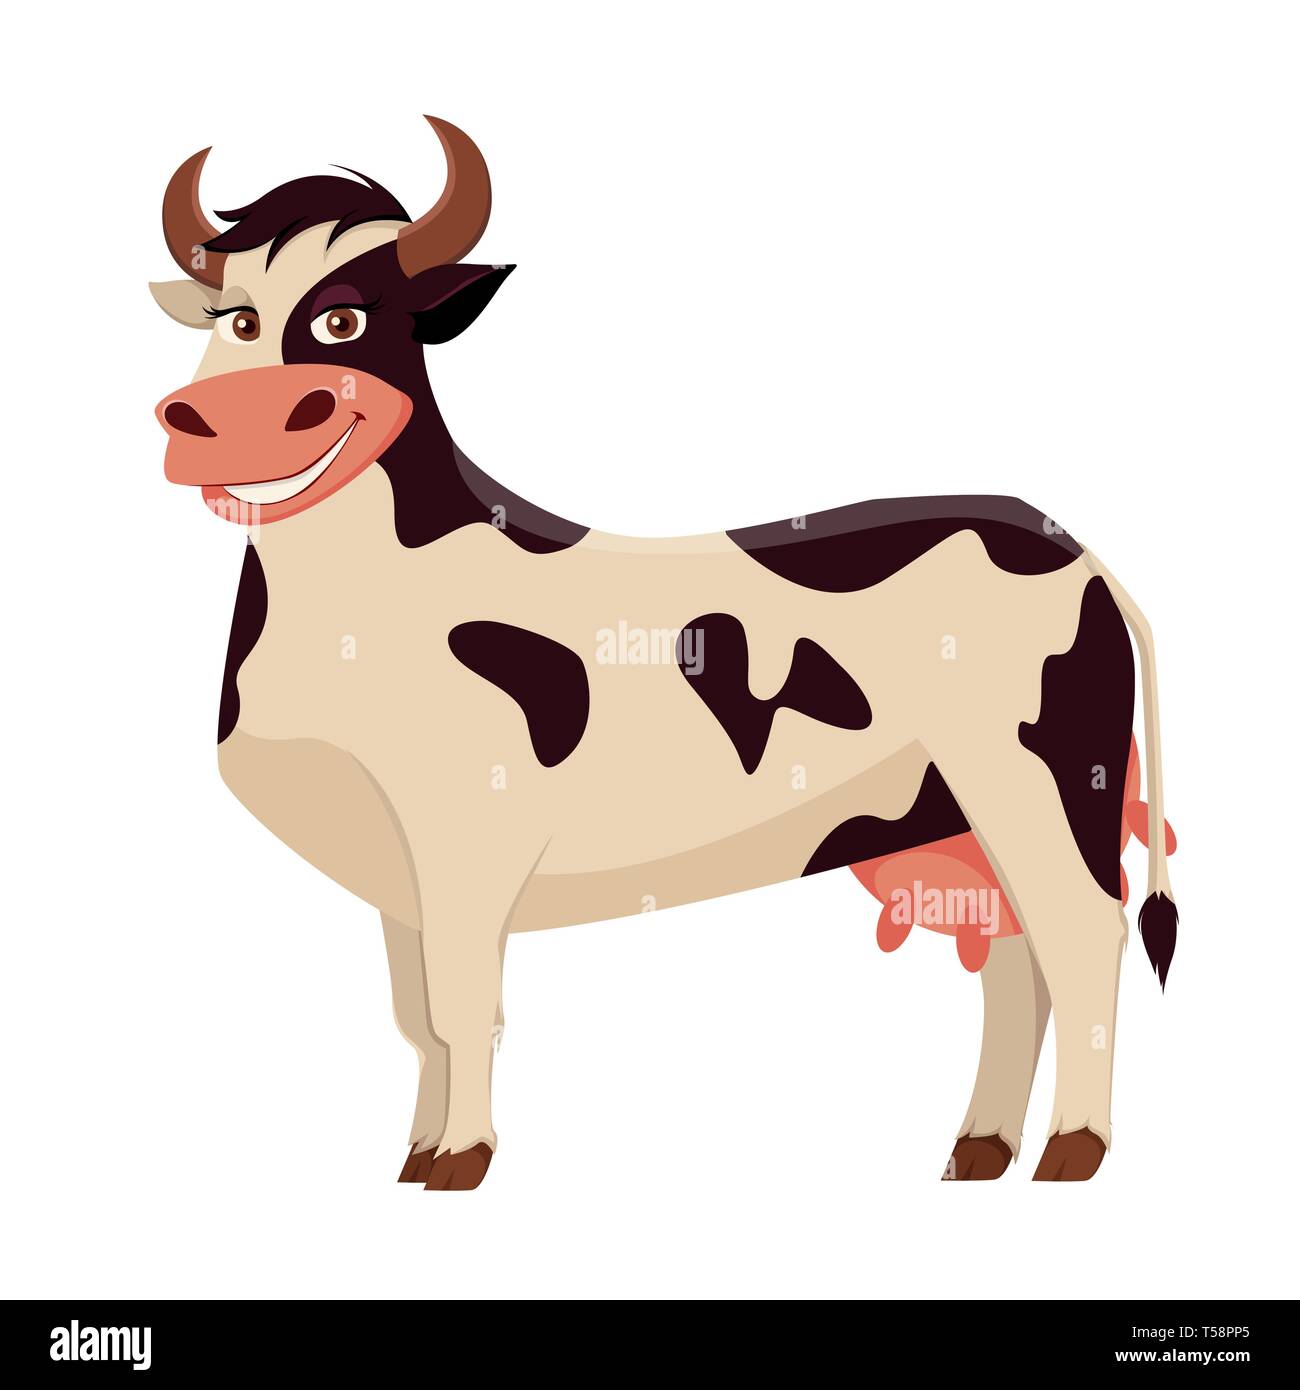 Süße Kuh Bauernhof Tier. Cartoon Charakter. Vector Illustration auf weißem Hintergrund. Stock Vektor